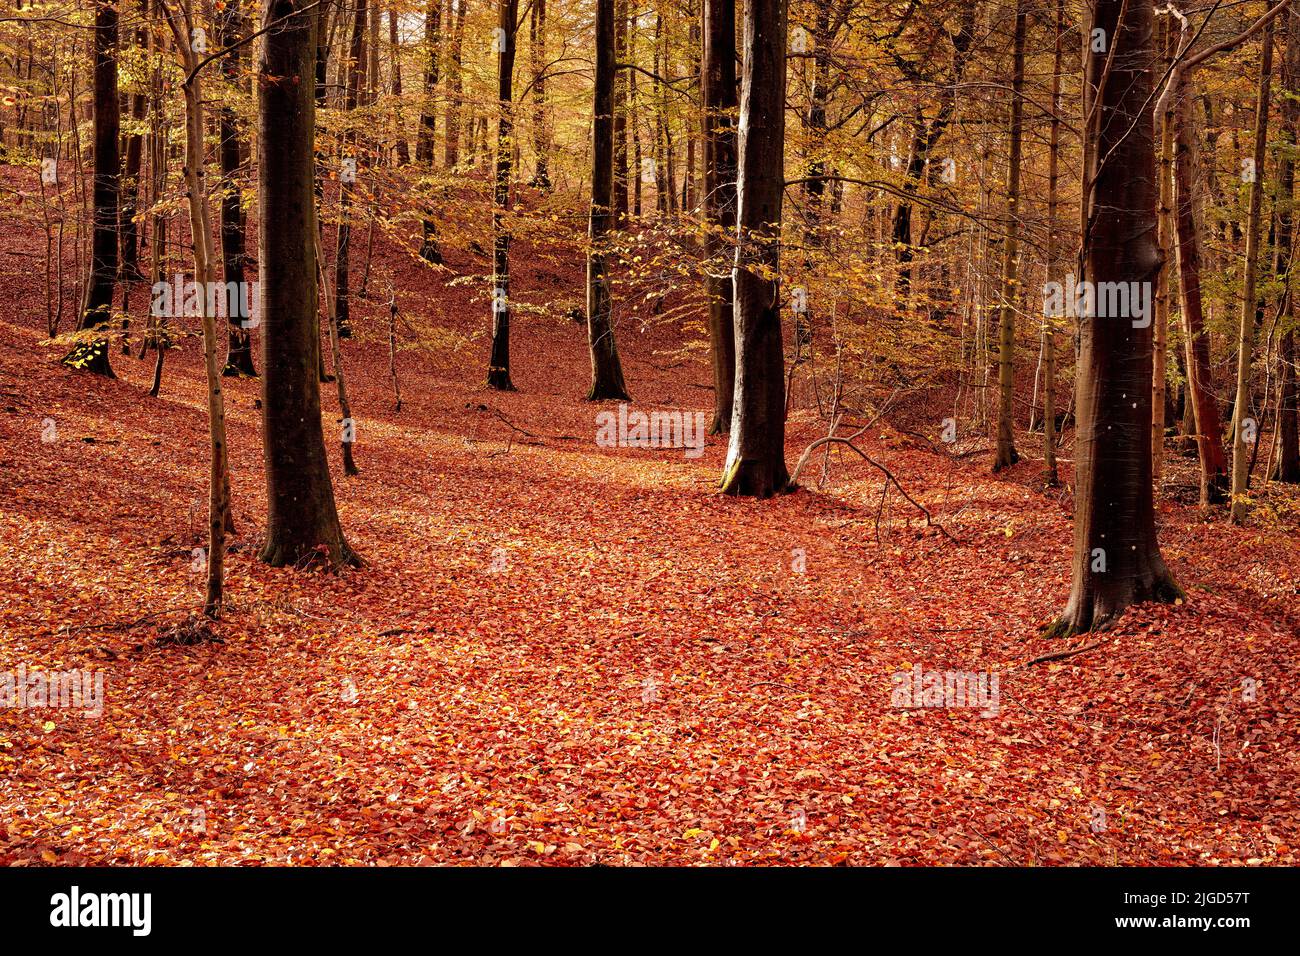 Schöne orange Farben des leeren Waldes im Herbst. Bäume in den Wäldern gefüllt mit hellen Blättern auf dem Boden während der Herbstsaison. Abgelegen, abgeschieden Stockfoto